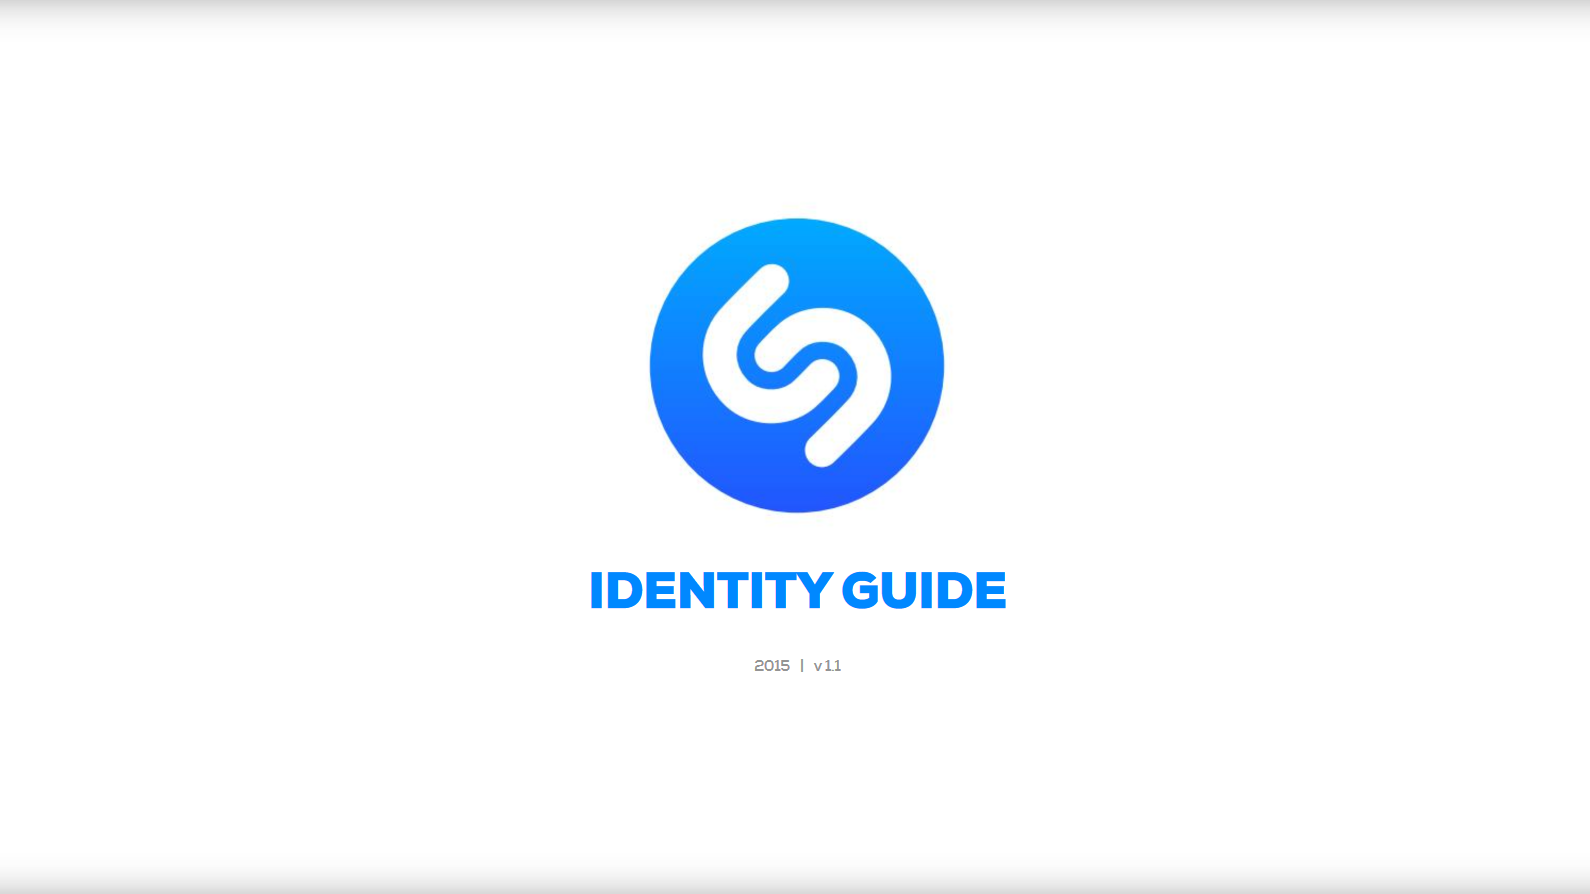 Shazam's Brand Guide